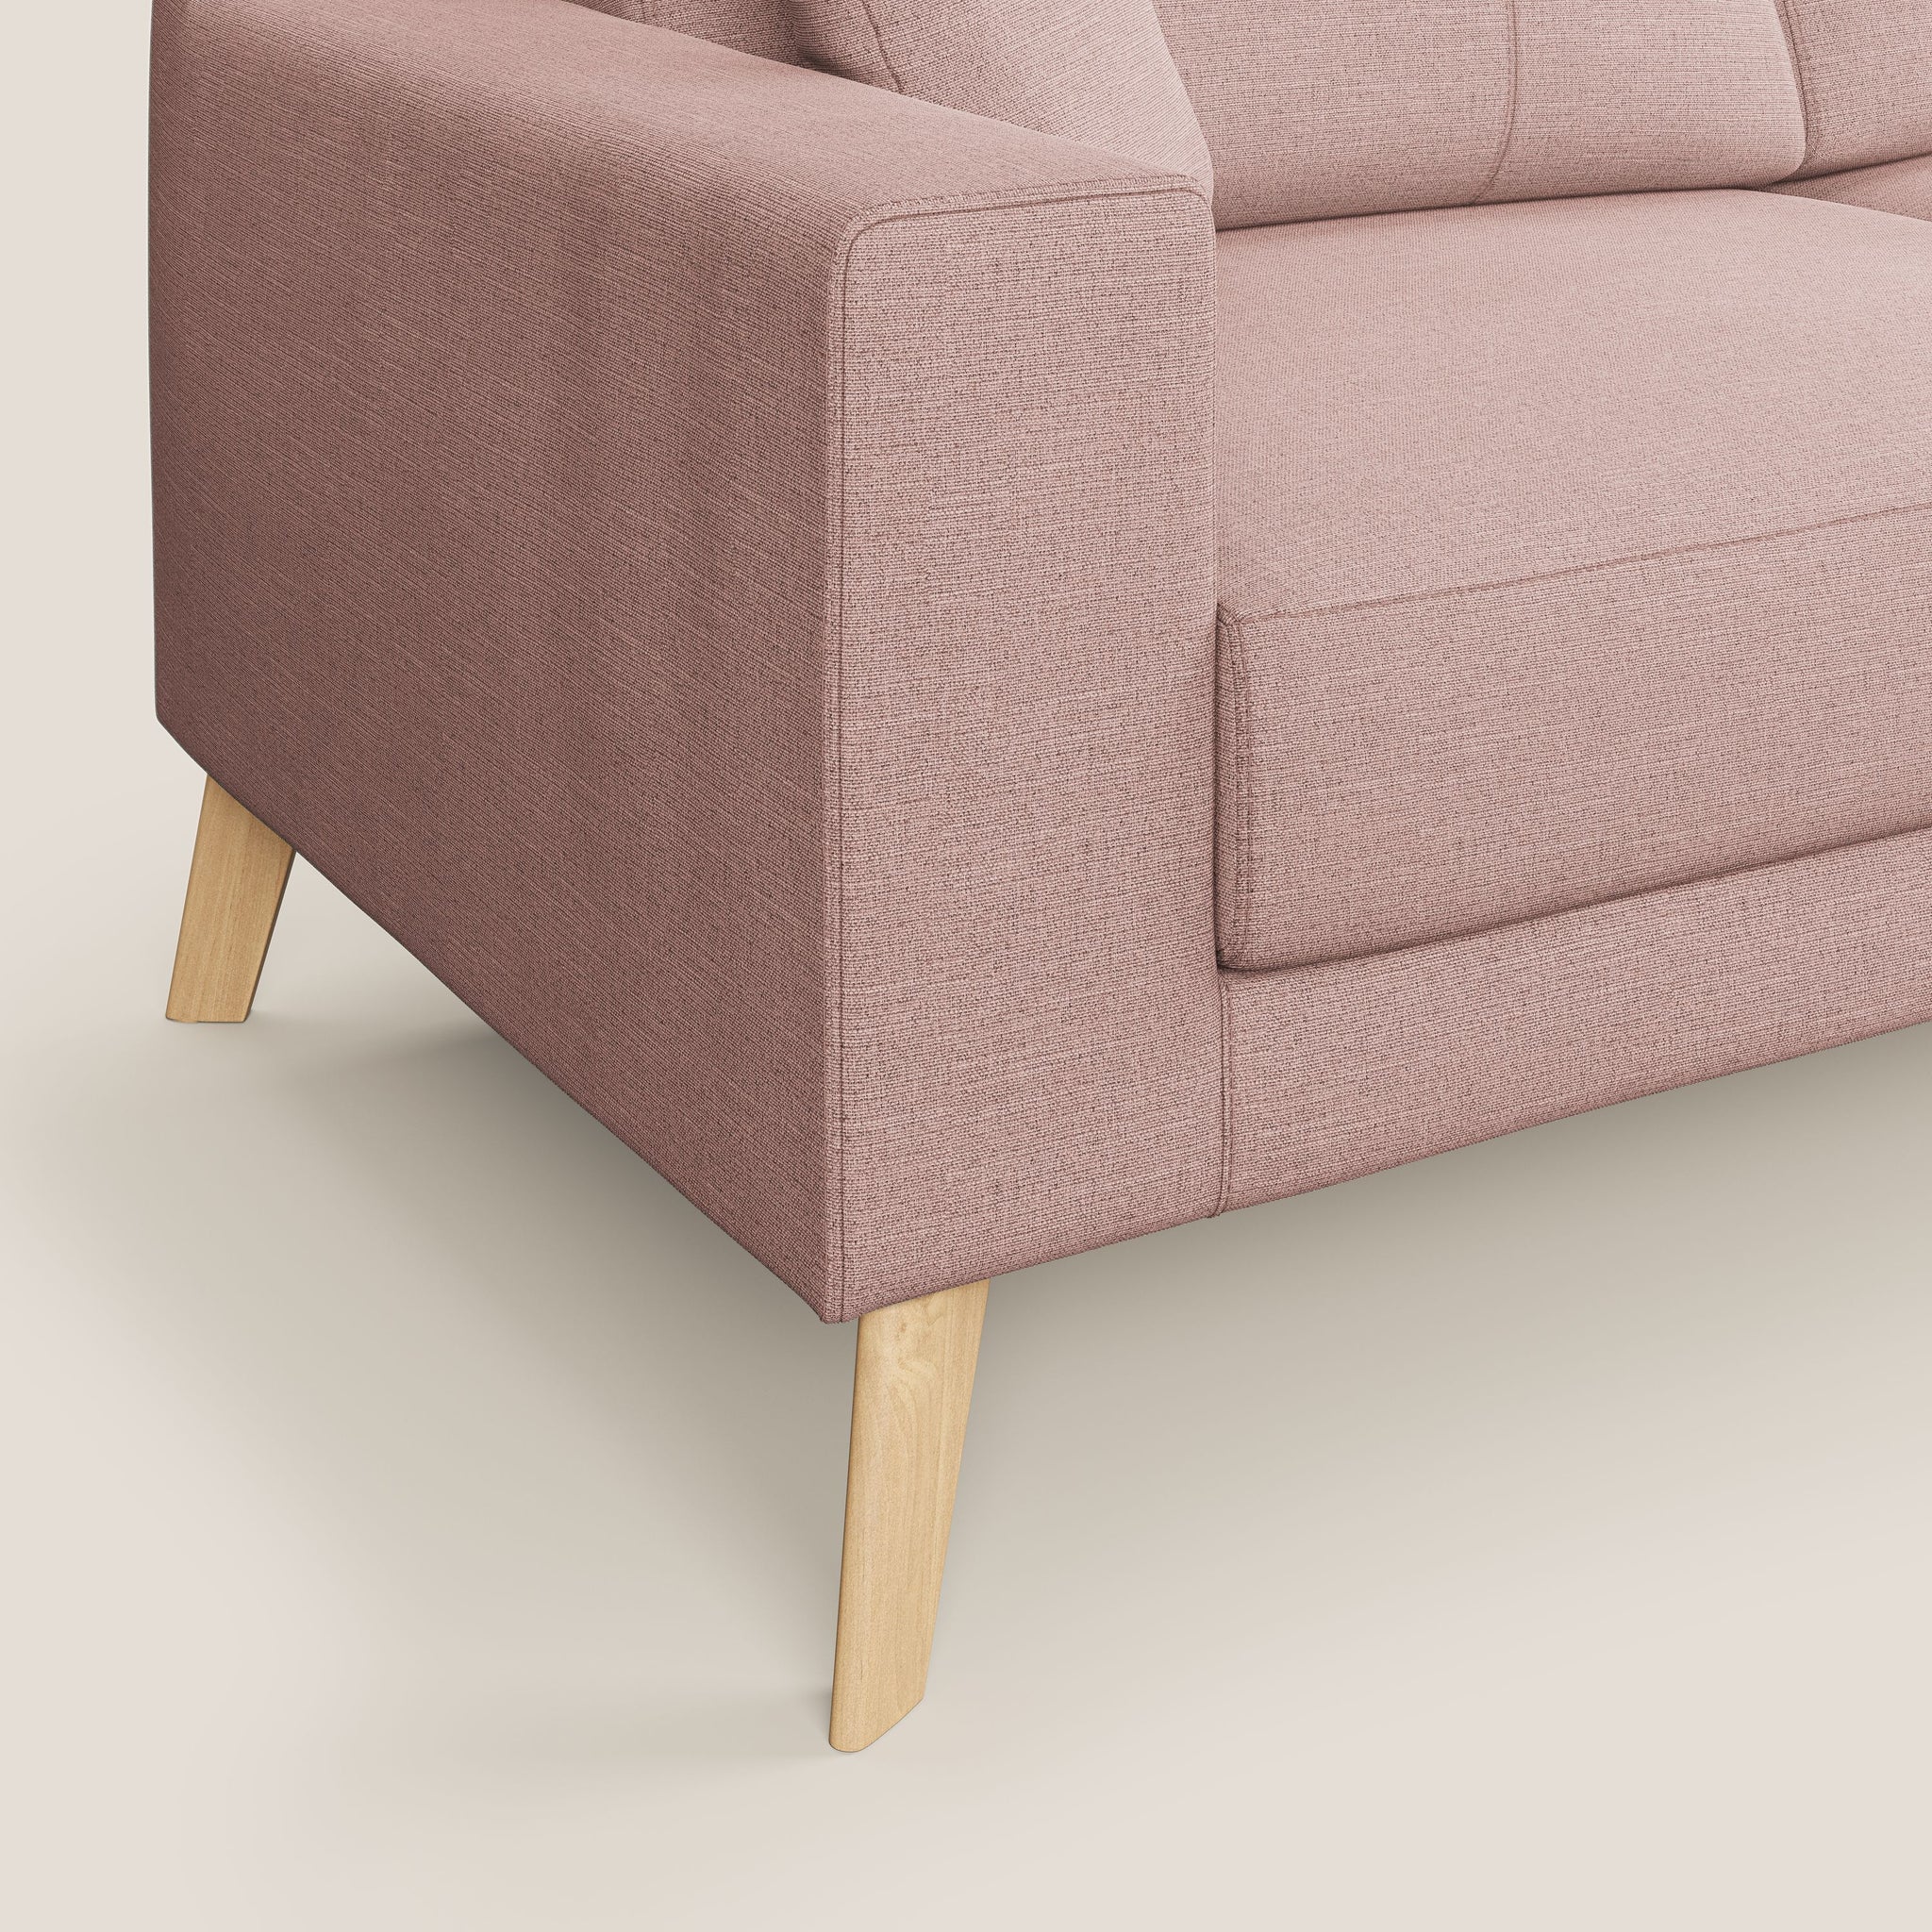 Danish divano moderno in tessuto Ecosostenibile